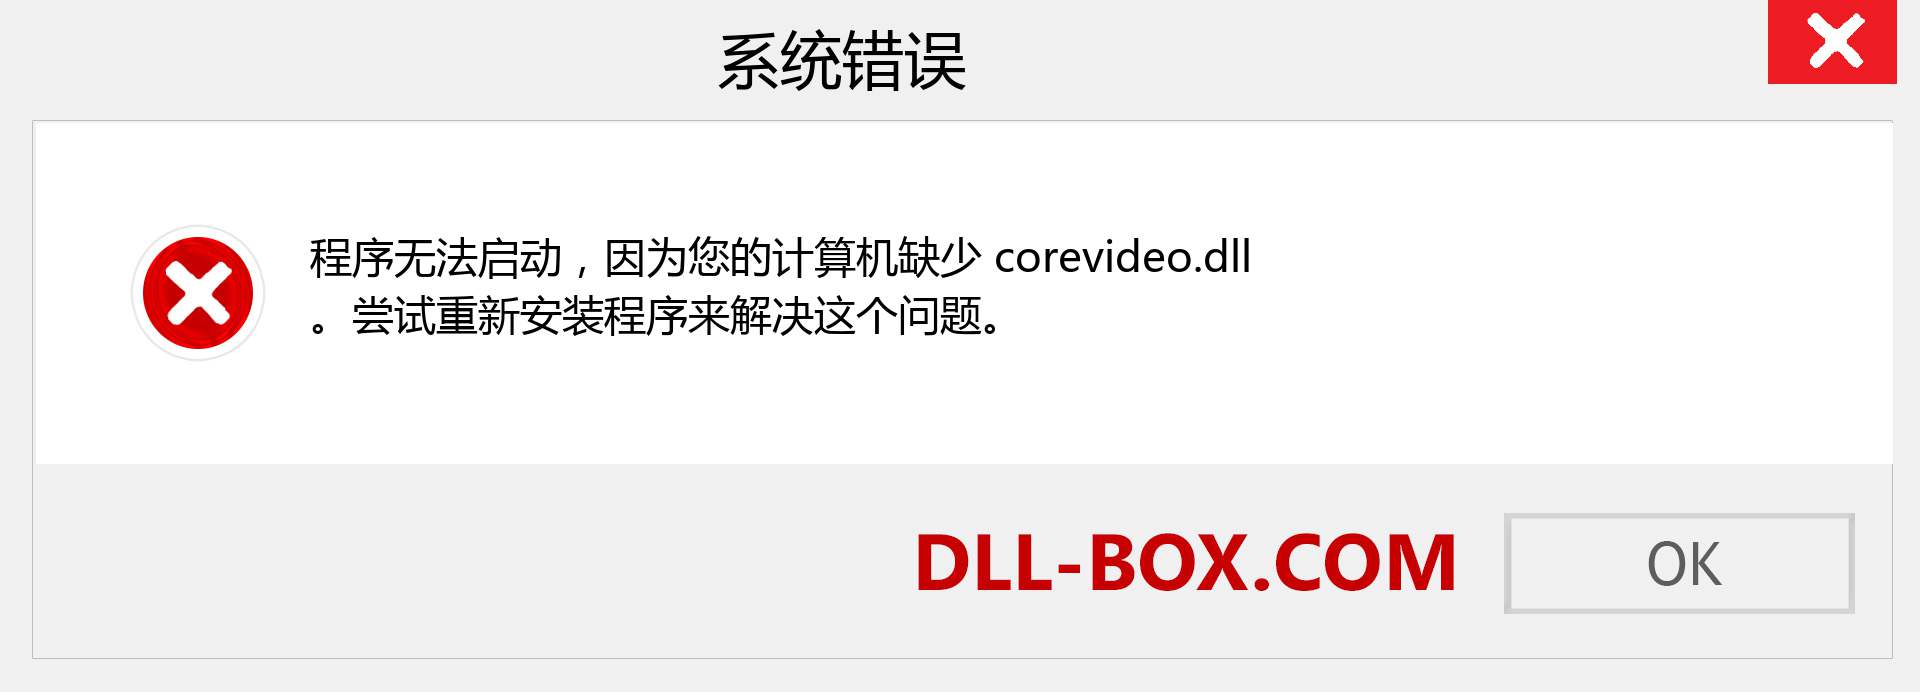 corevideo.dll 文件丢失？。 适用于 Windows 7、8、10 的下载 - 修复 Windows、照片、图像上的 corevideo dll 丢失错误